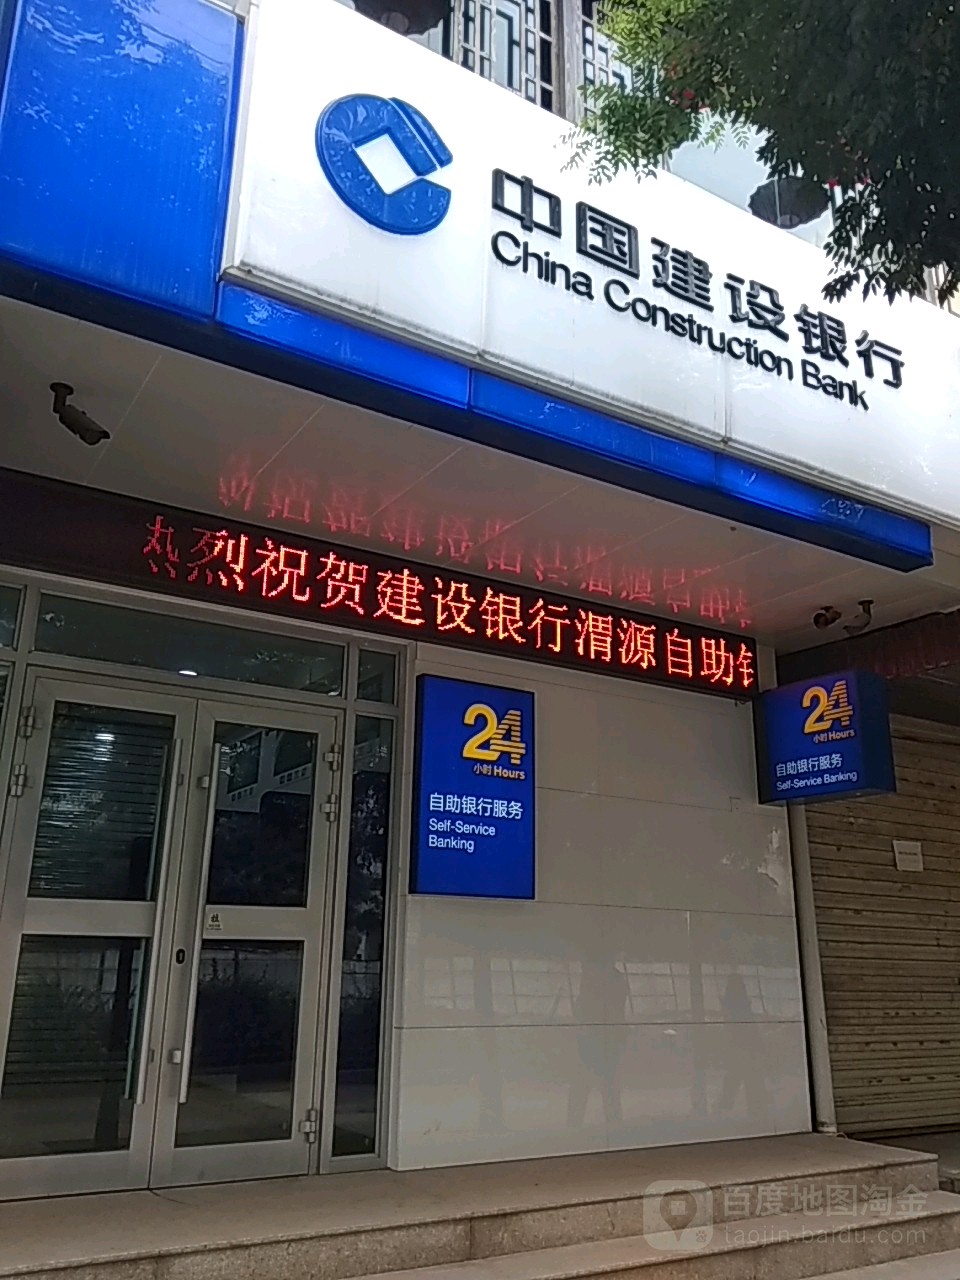 中国建设银行24楼小时自助银行